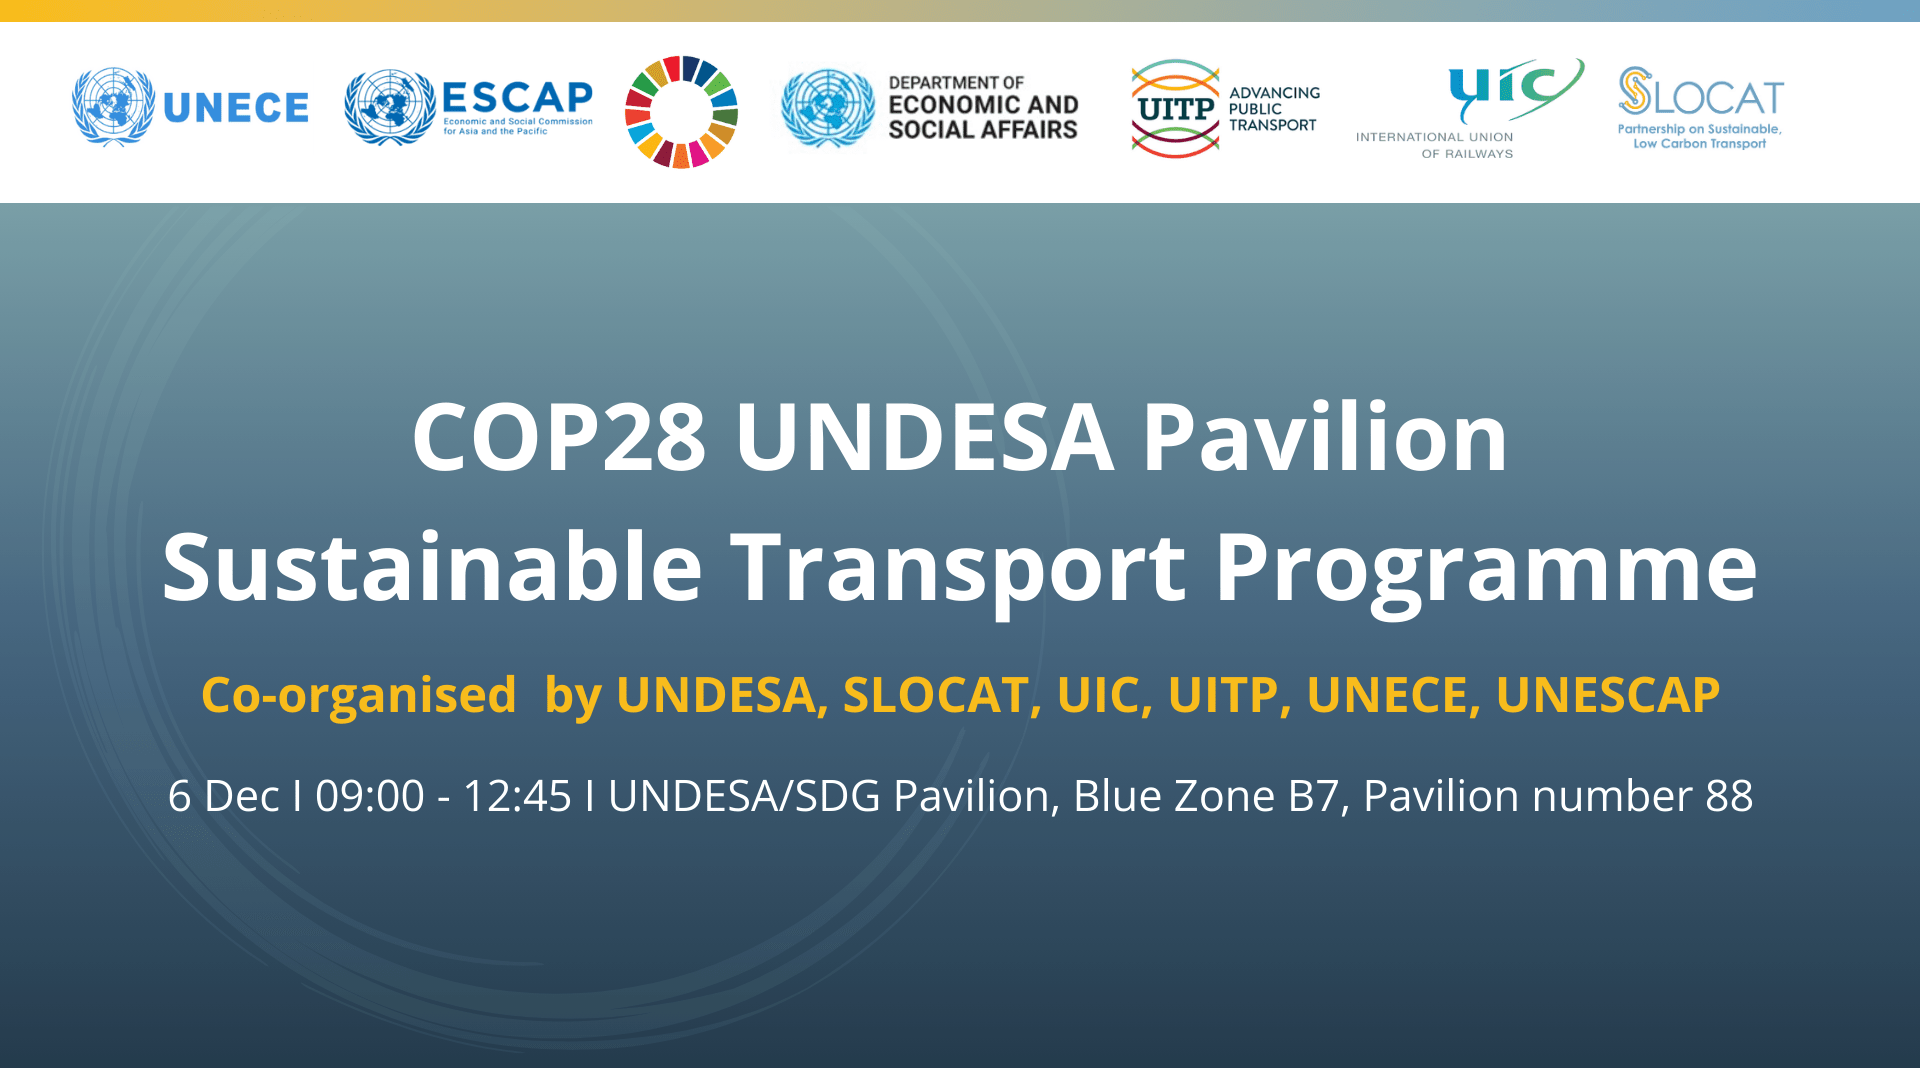 COP28 UNDESA Pavilion Sustainable Transport Programme